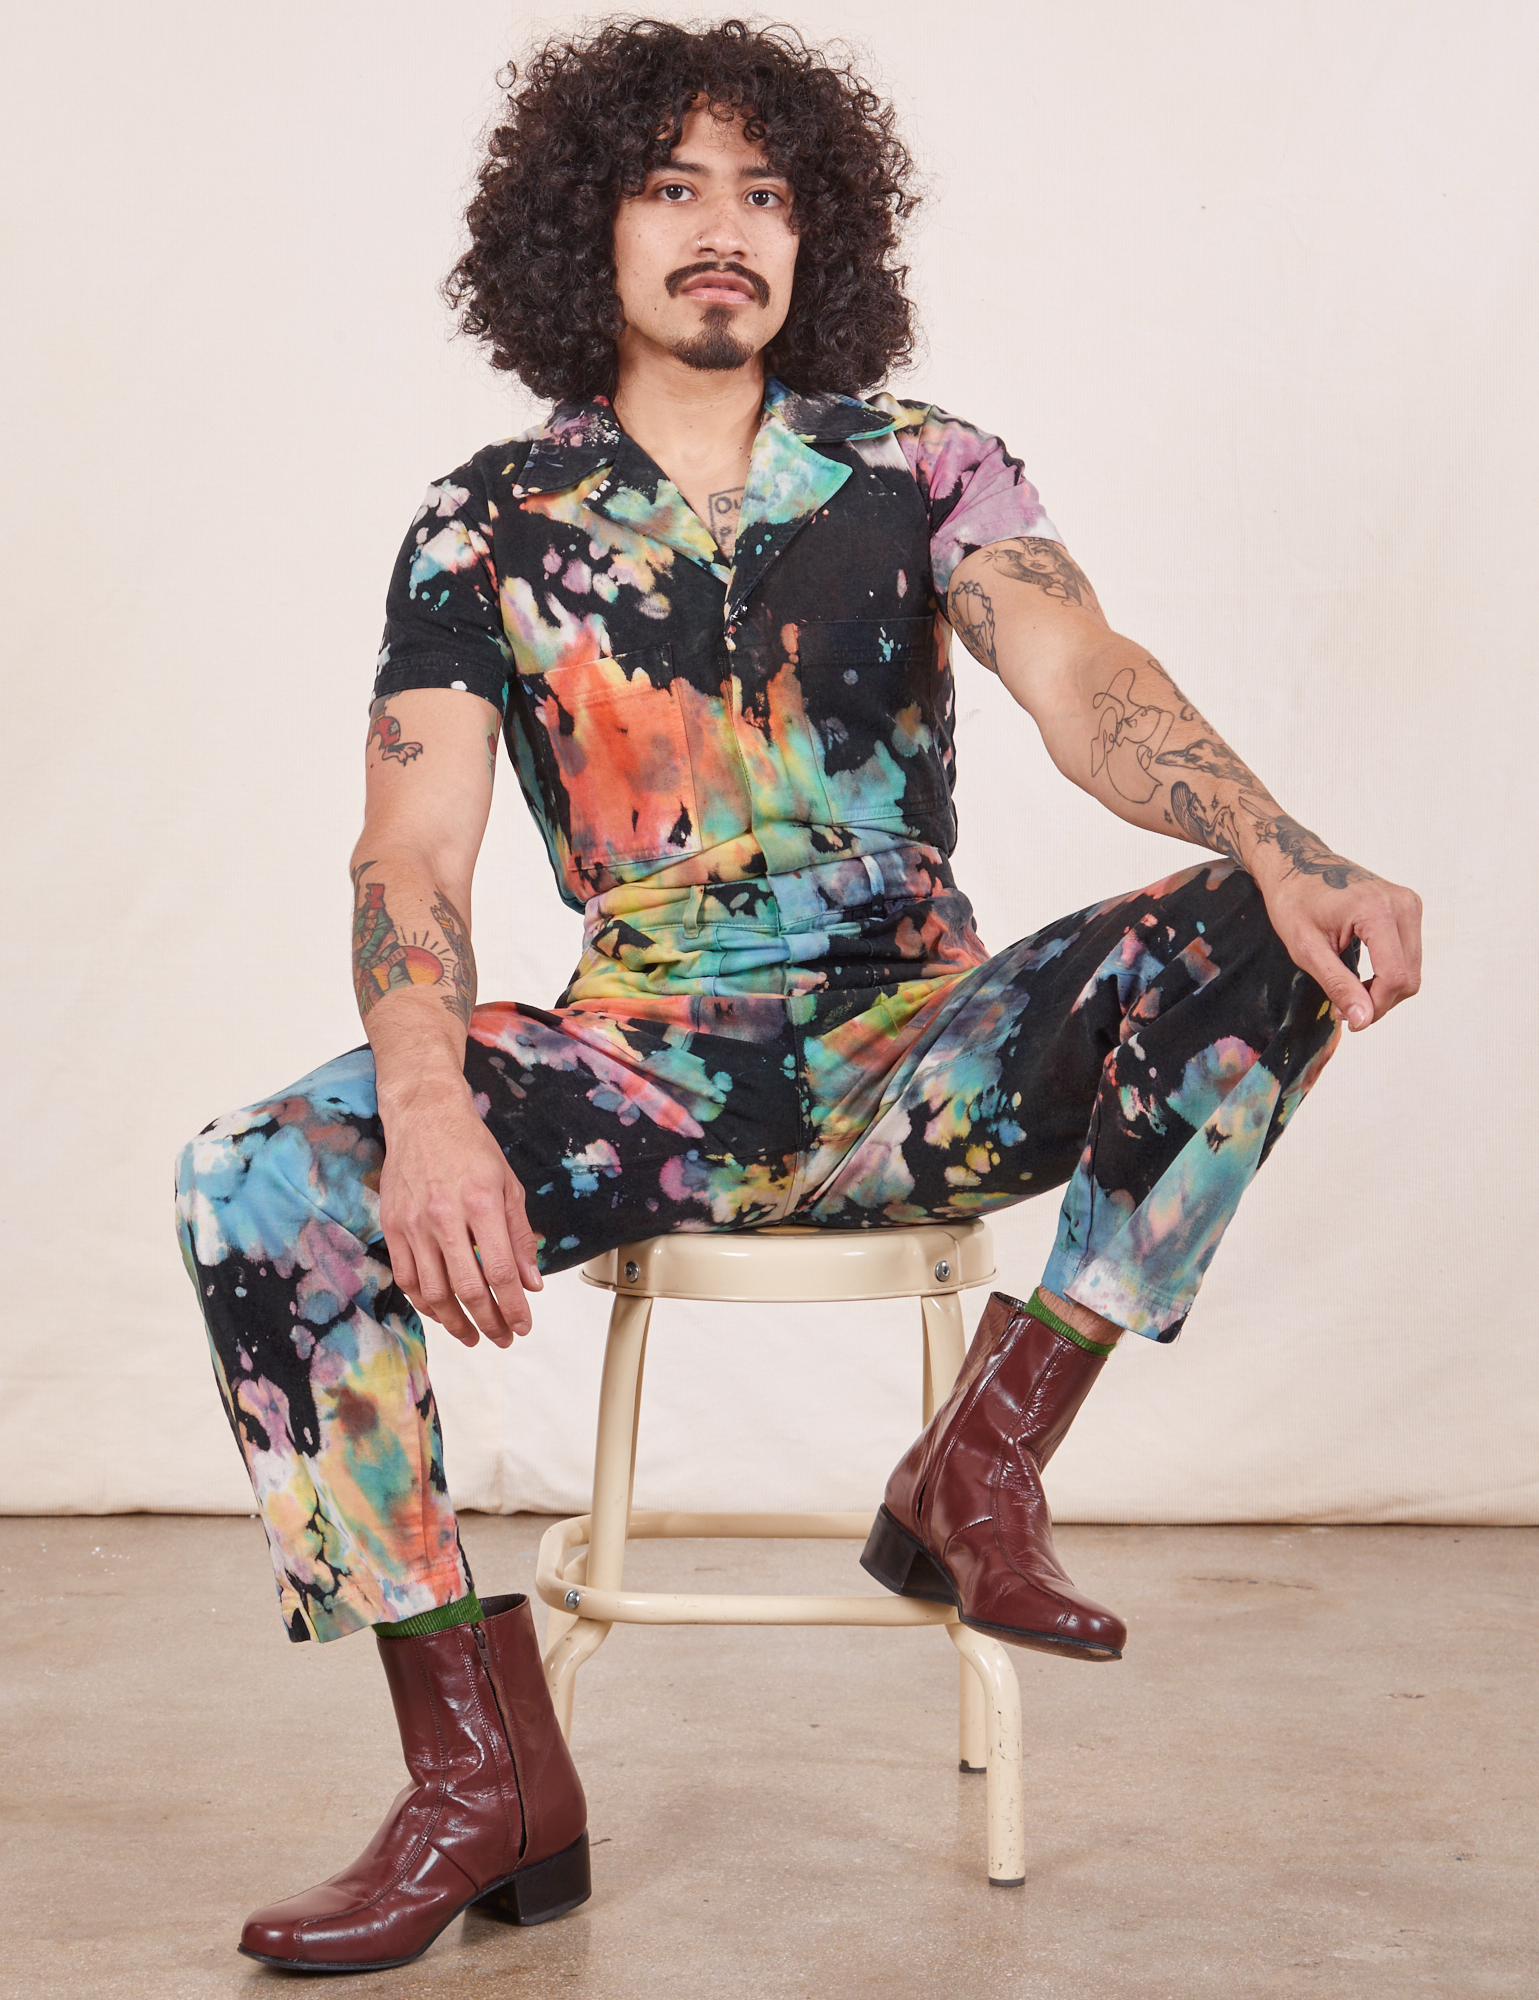 Short Sleeve Jumpsuit in Rainbow Magic Waters on Jesse sitting on vintage stool